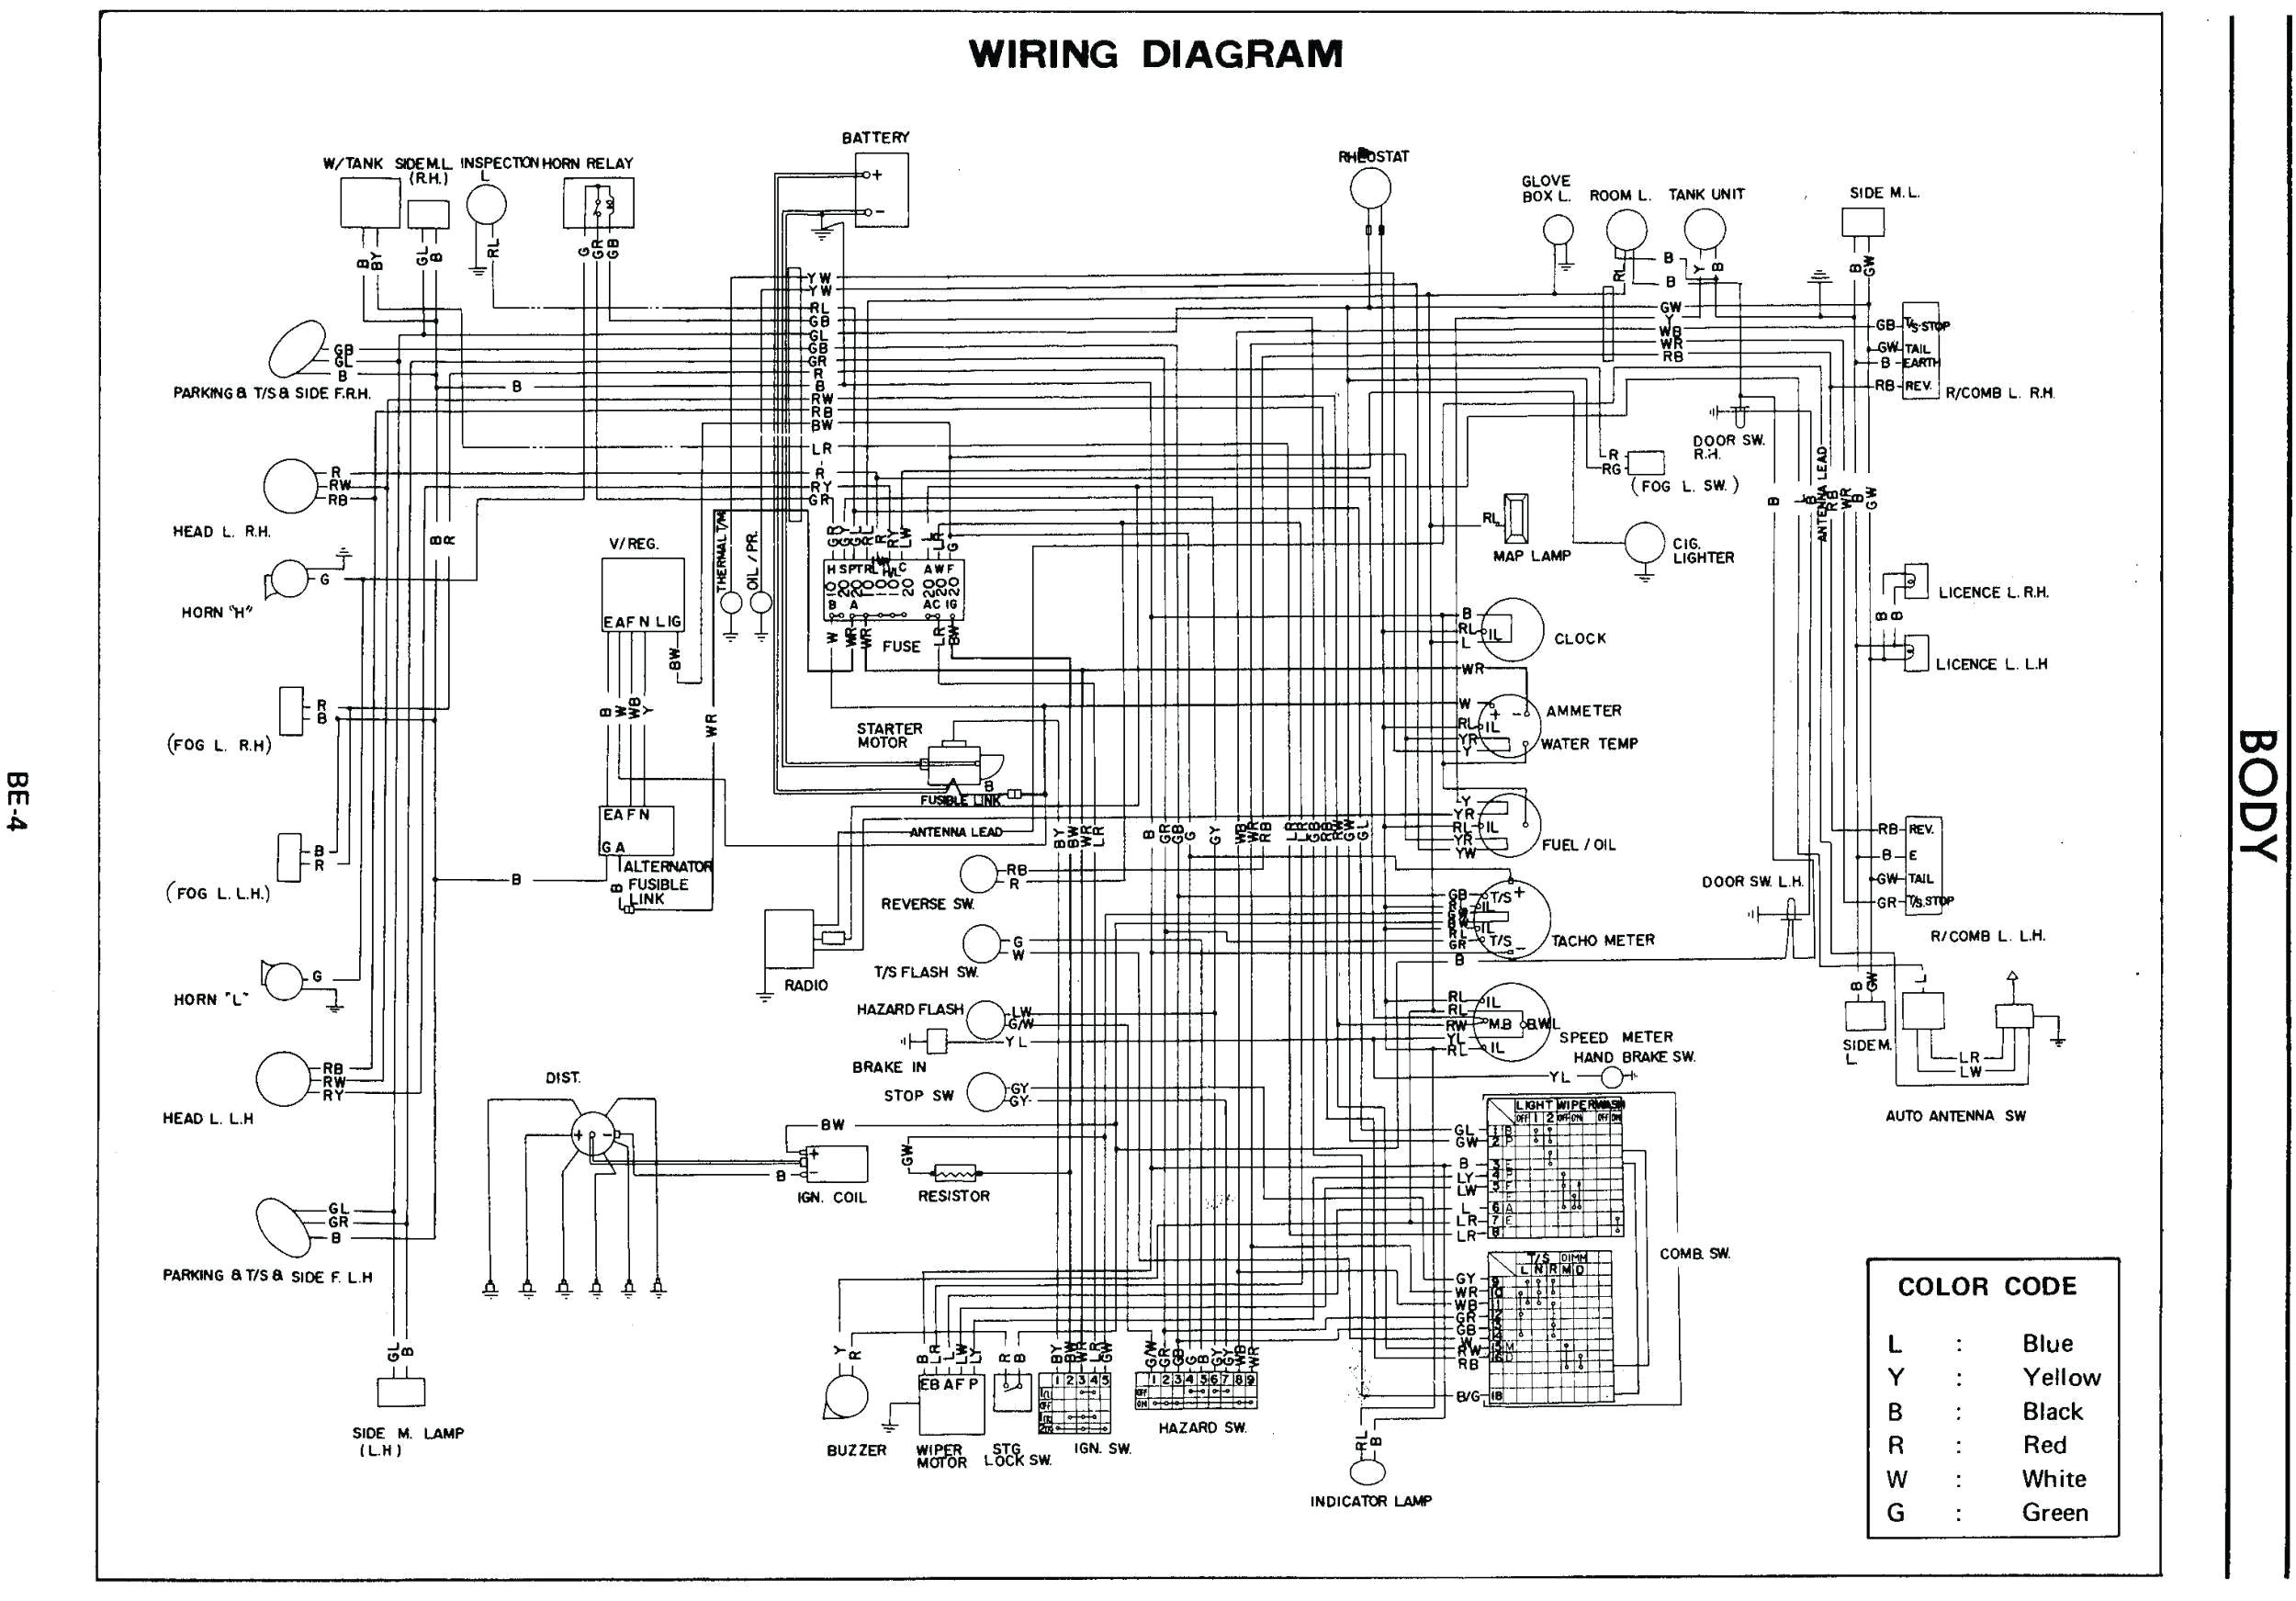 wiring diagram mini cooper schema wiring diagram 2002 mini wiring diagram free picture schematic